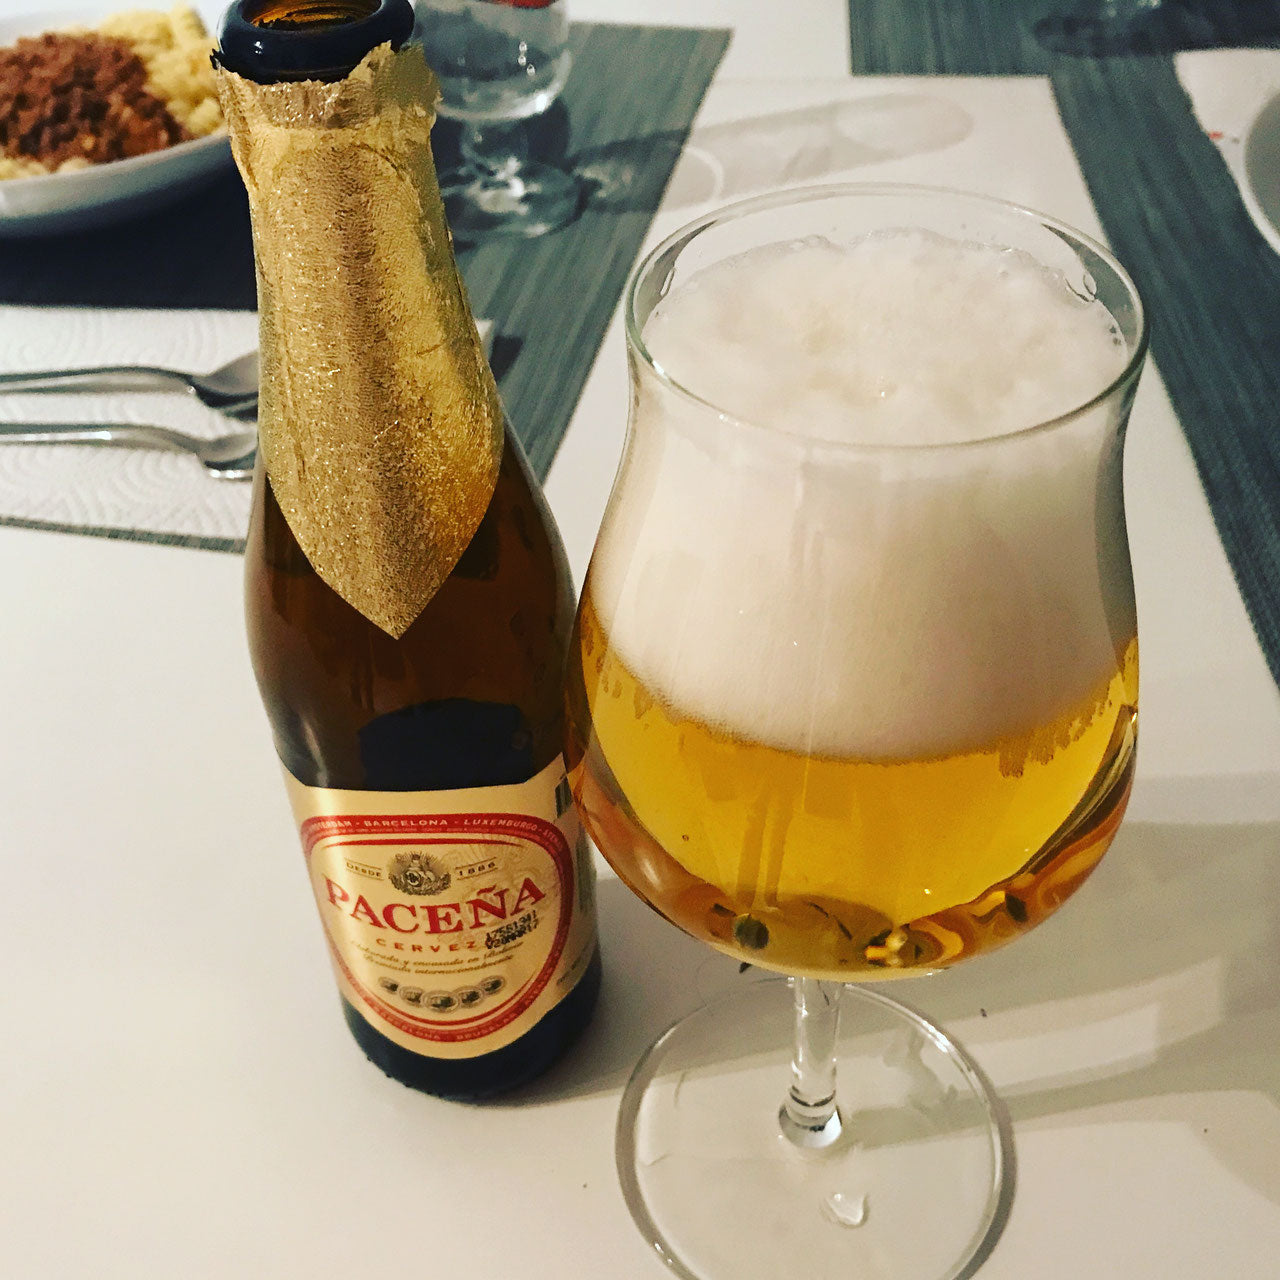 
                  
                    Cerveza Paceña Flasche mit Glas Bier
                  
                